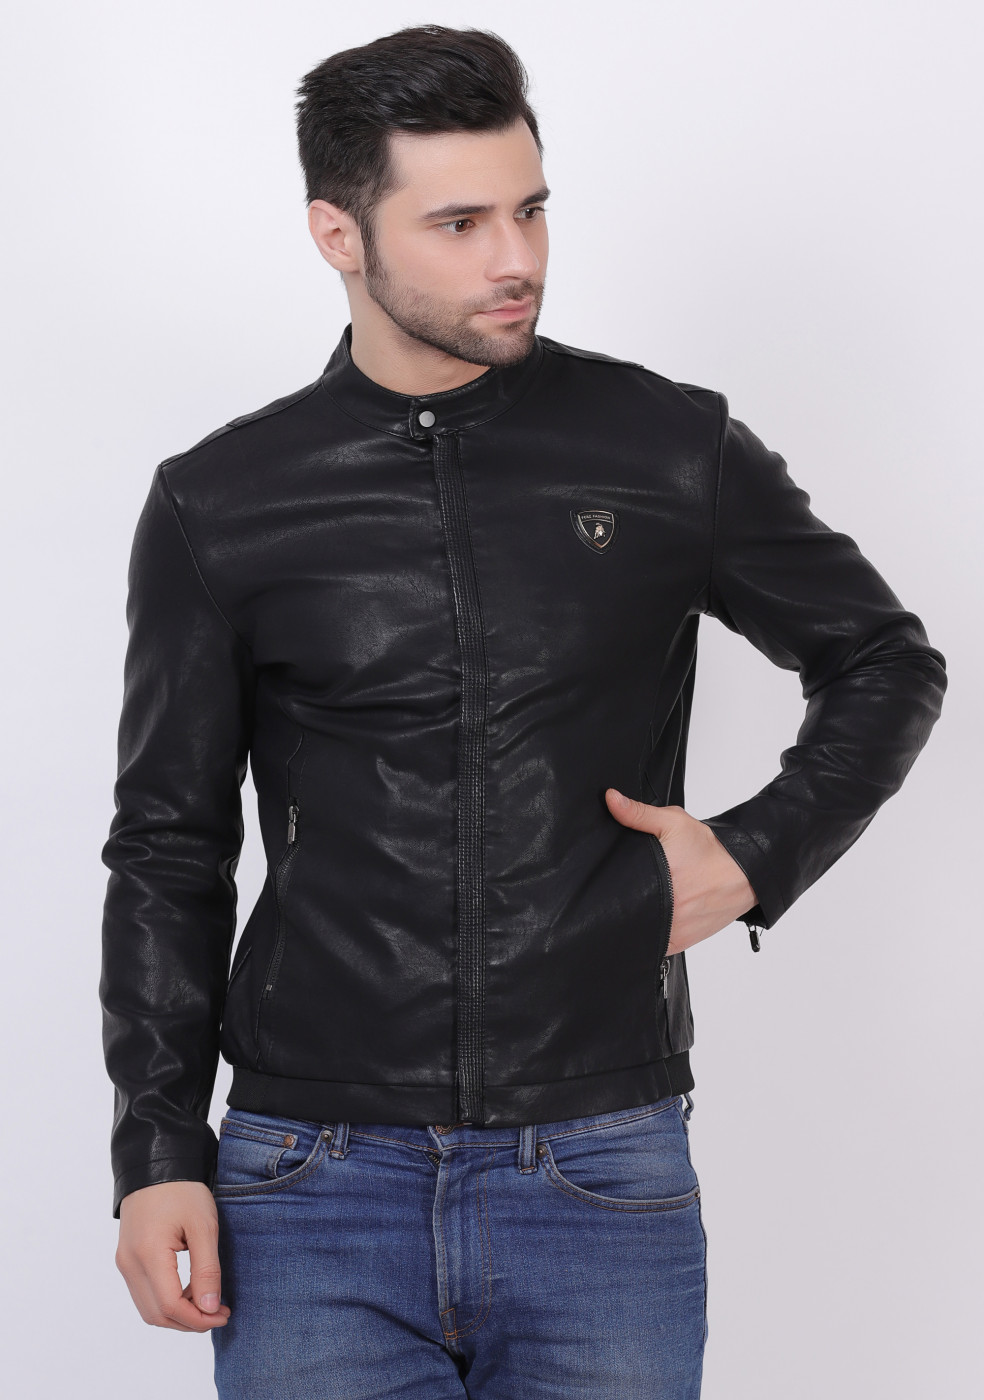 Buy Highlander Black Leather Jacket for Men Online at Rs.1806 - Ketch